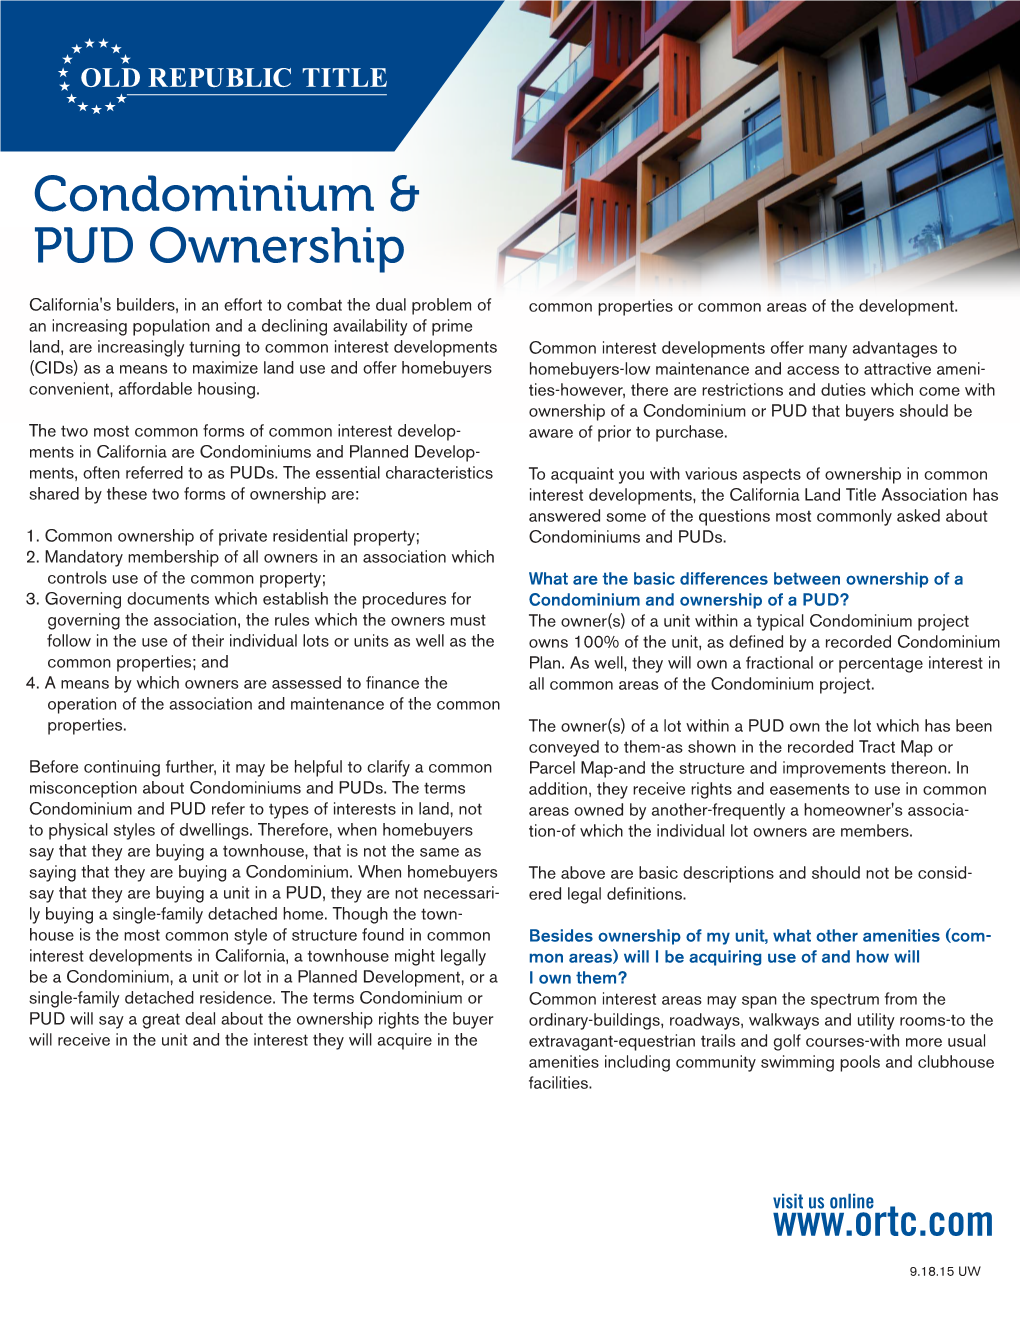 Guide to Condominium & PUD Ownership